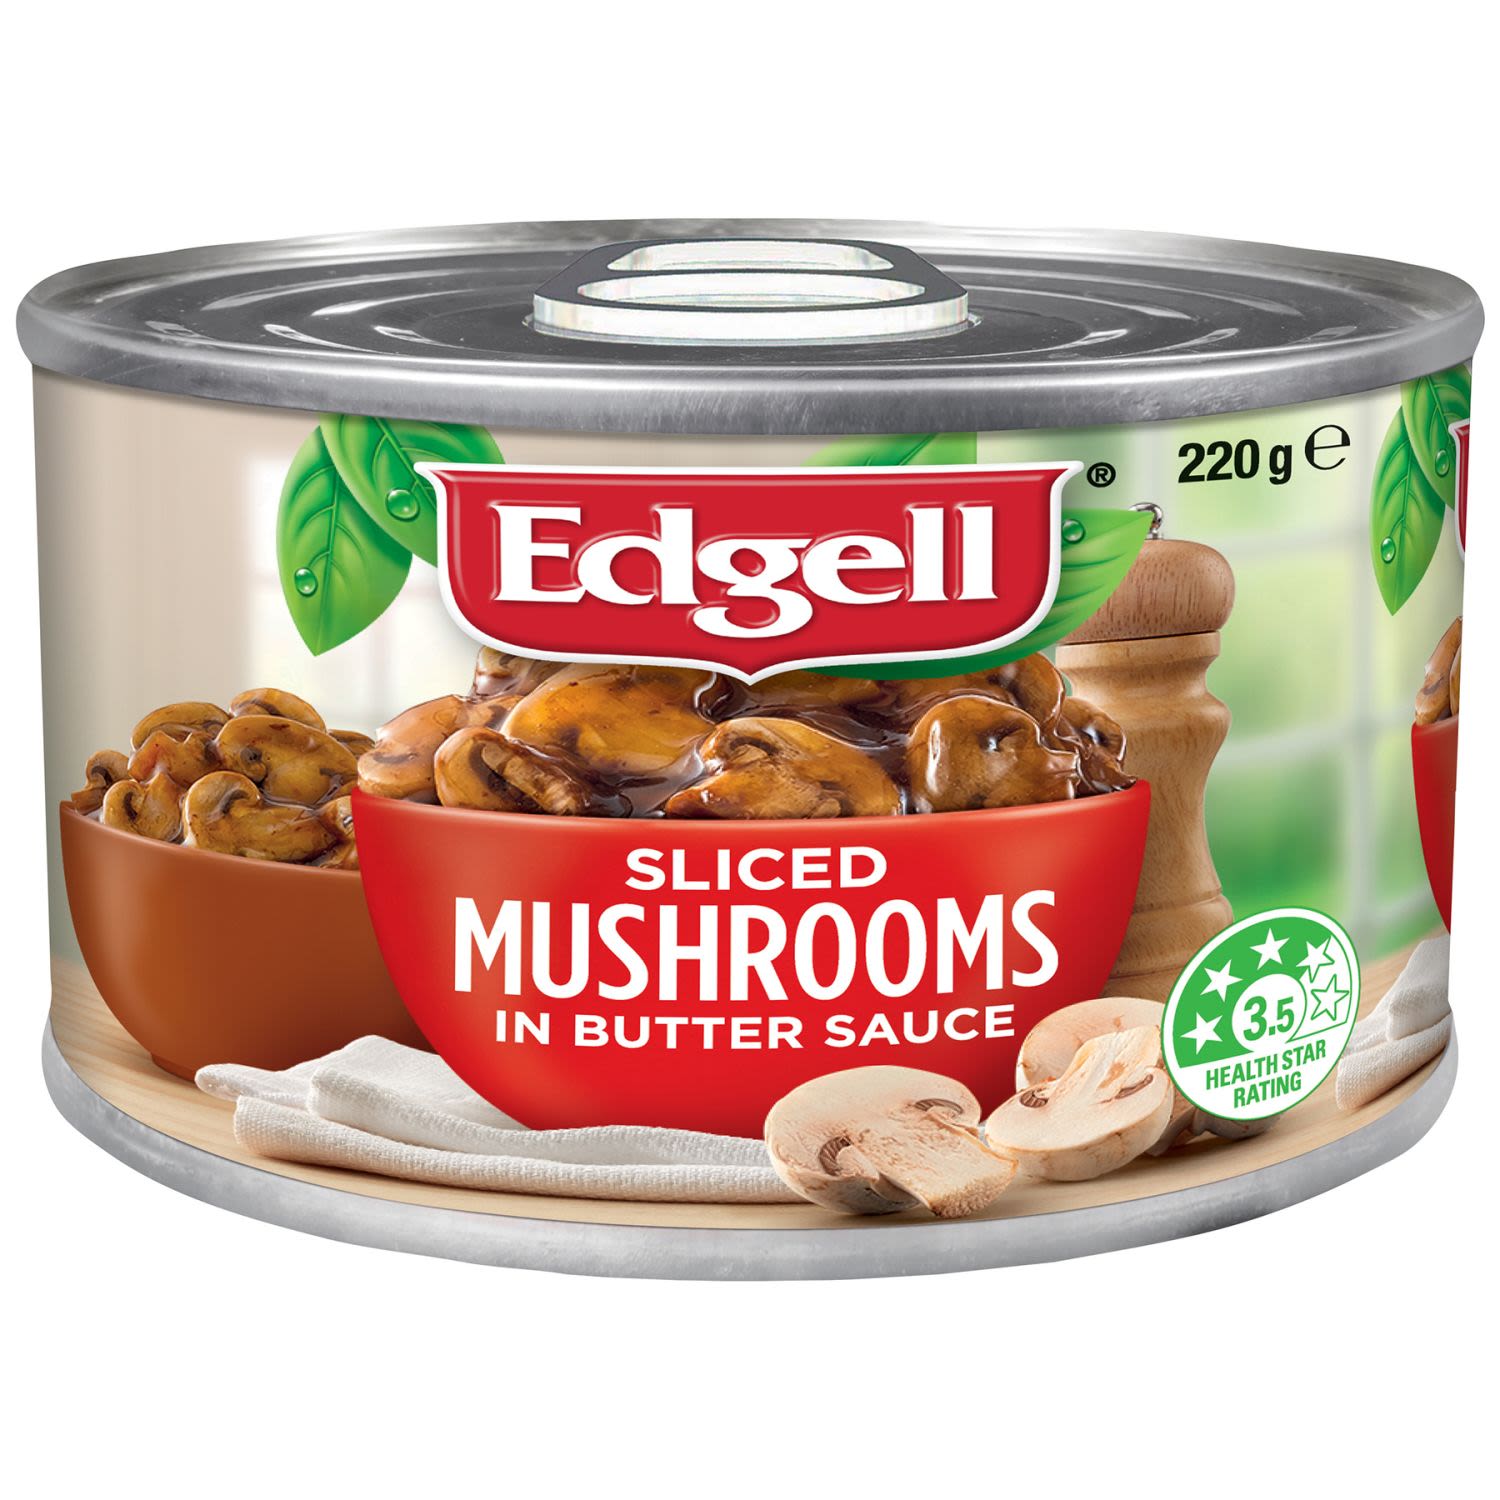 Edgell Sliced Mushrooms In Butter Sauce, 220 Gram